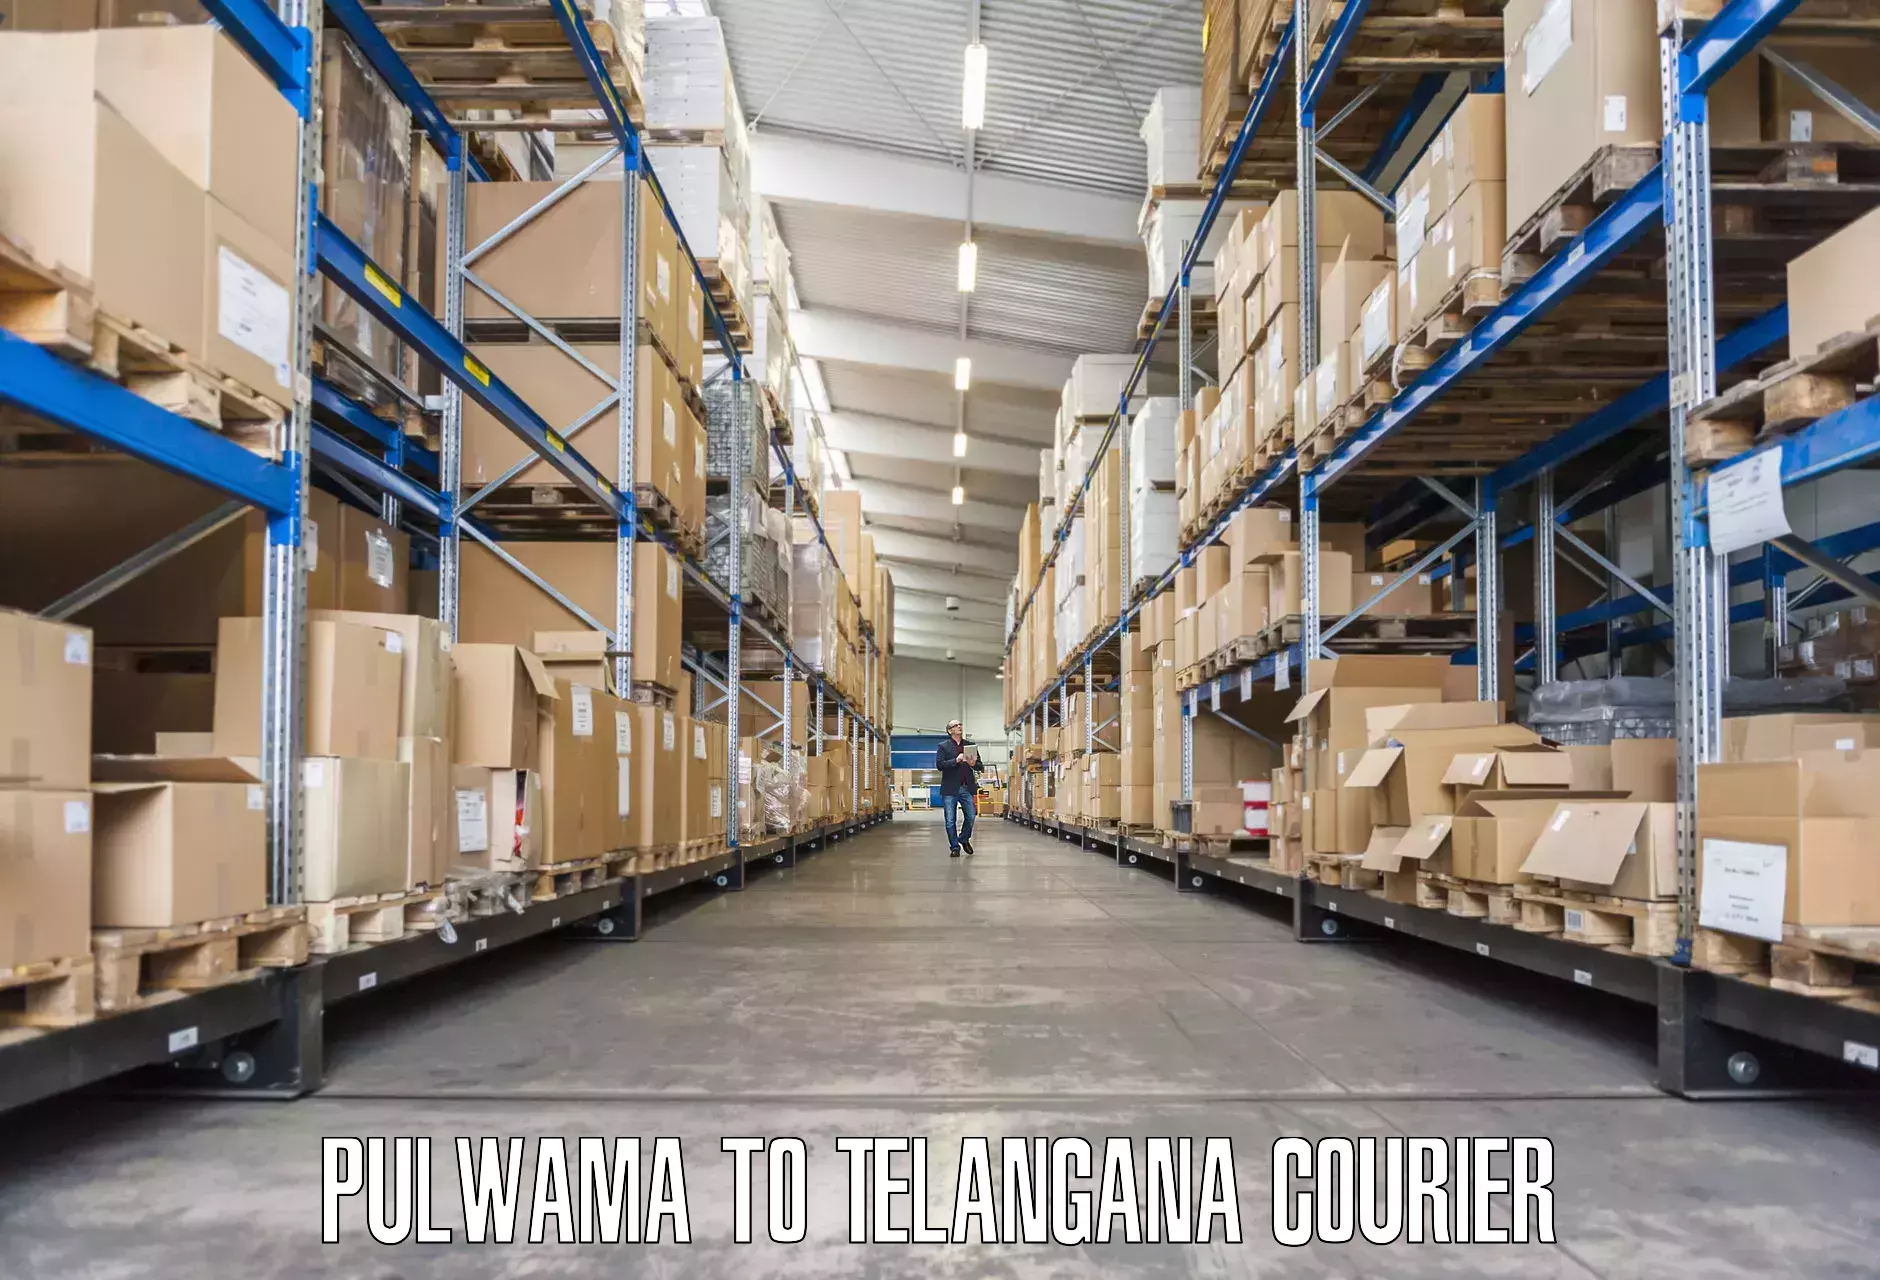 Furniture transport experts Pulwama to Kothagudem